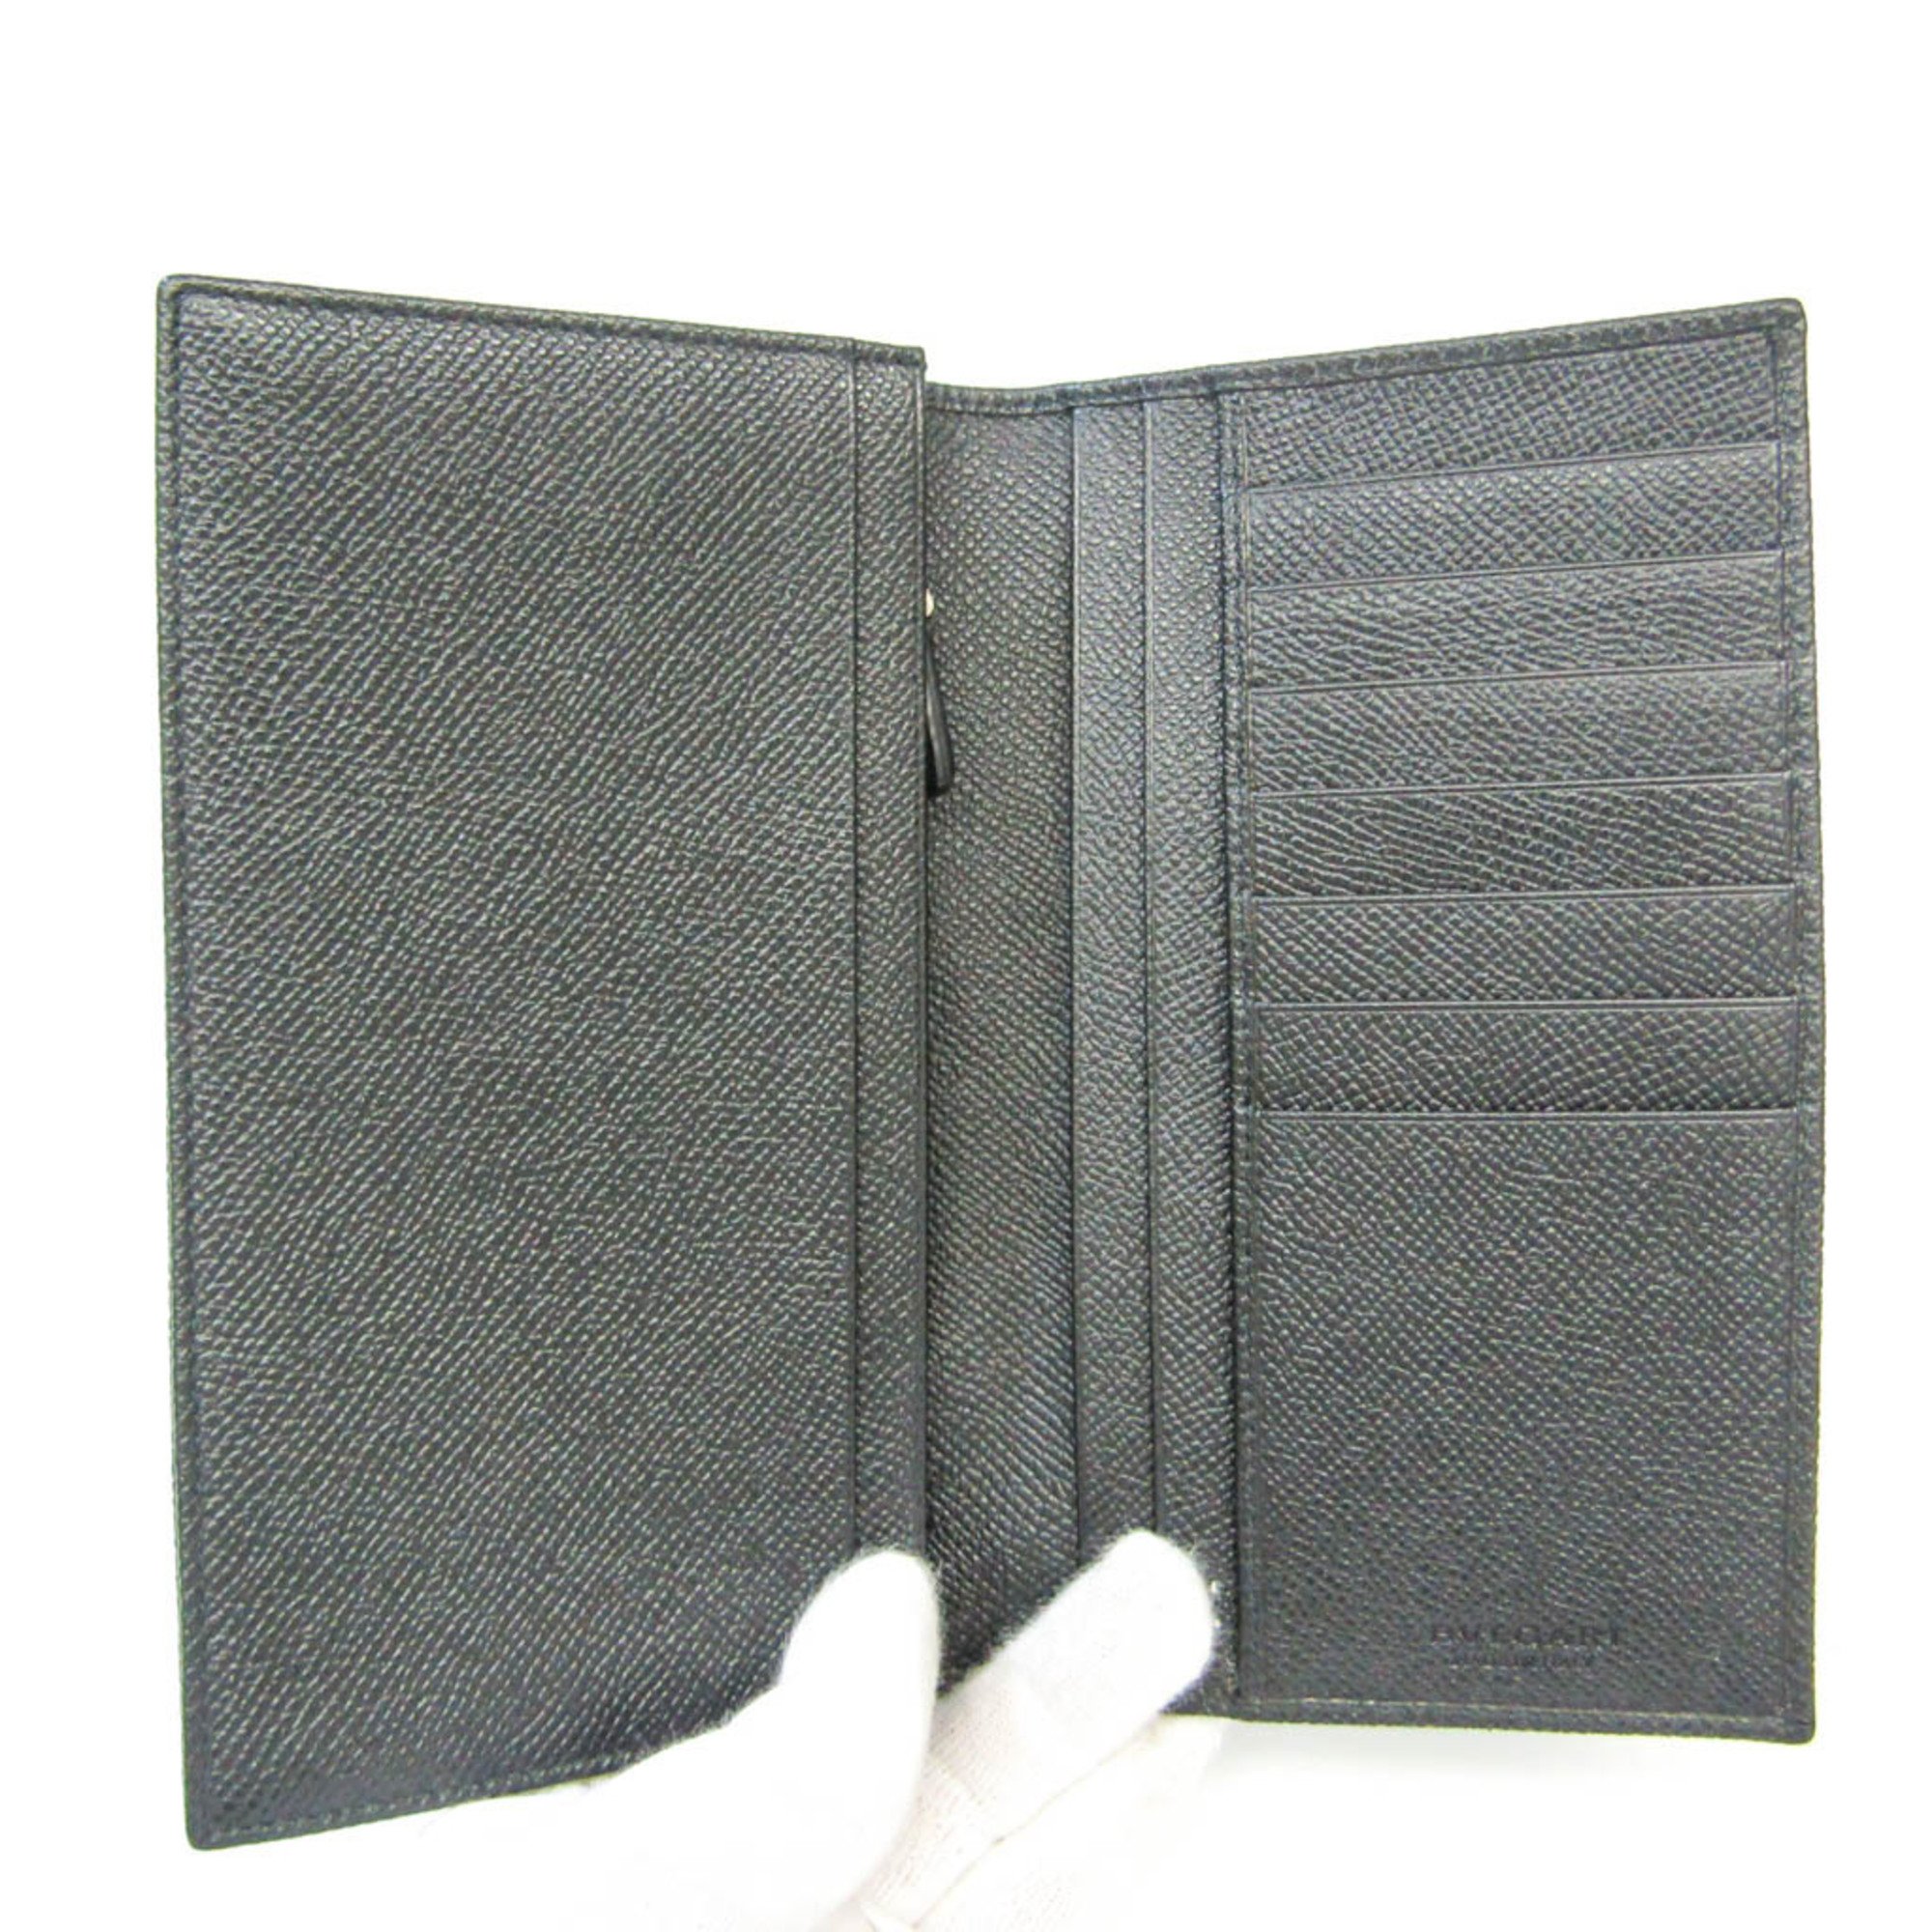 Bvlgari Bvlgari Bvlgari Man 30398 Men's Leather Long Wallet (bi-fold) Black